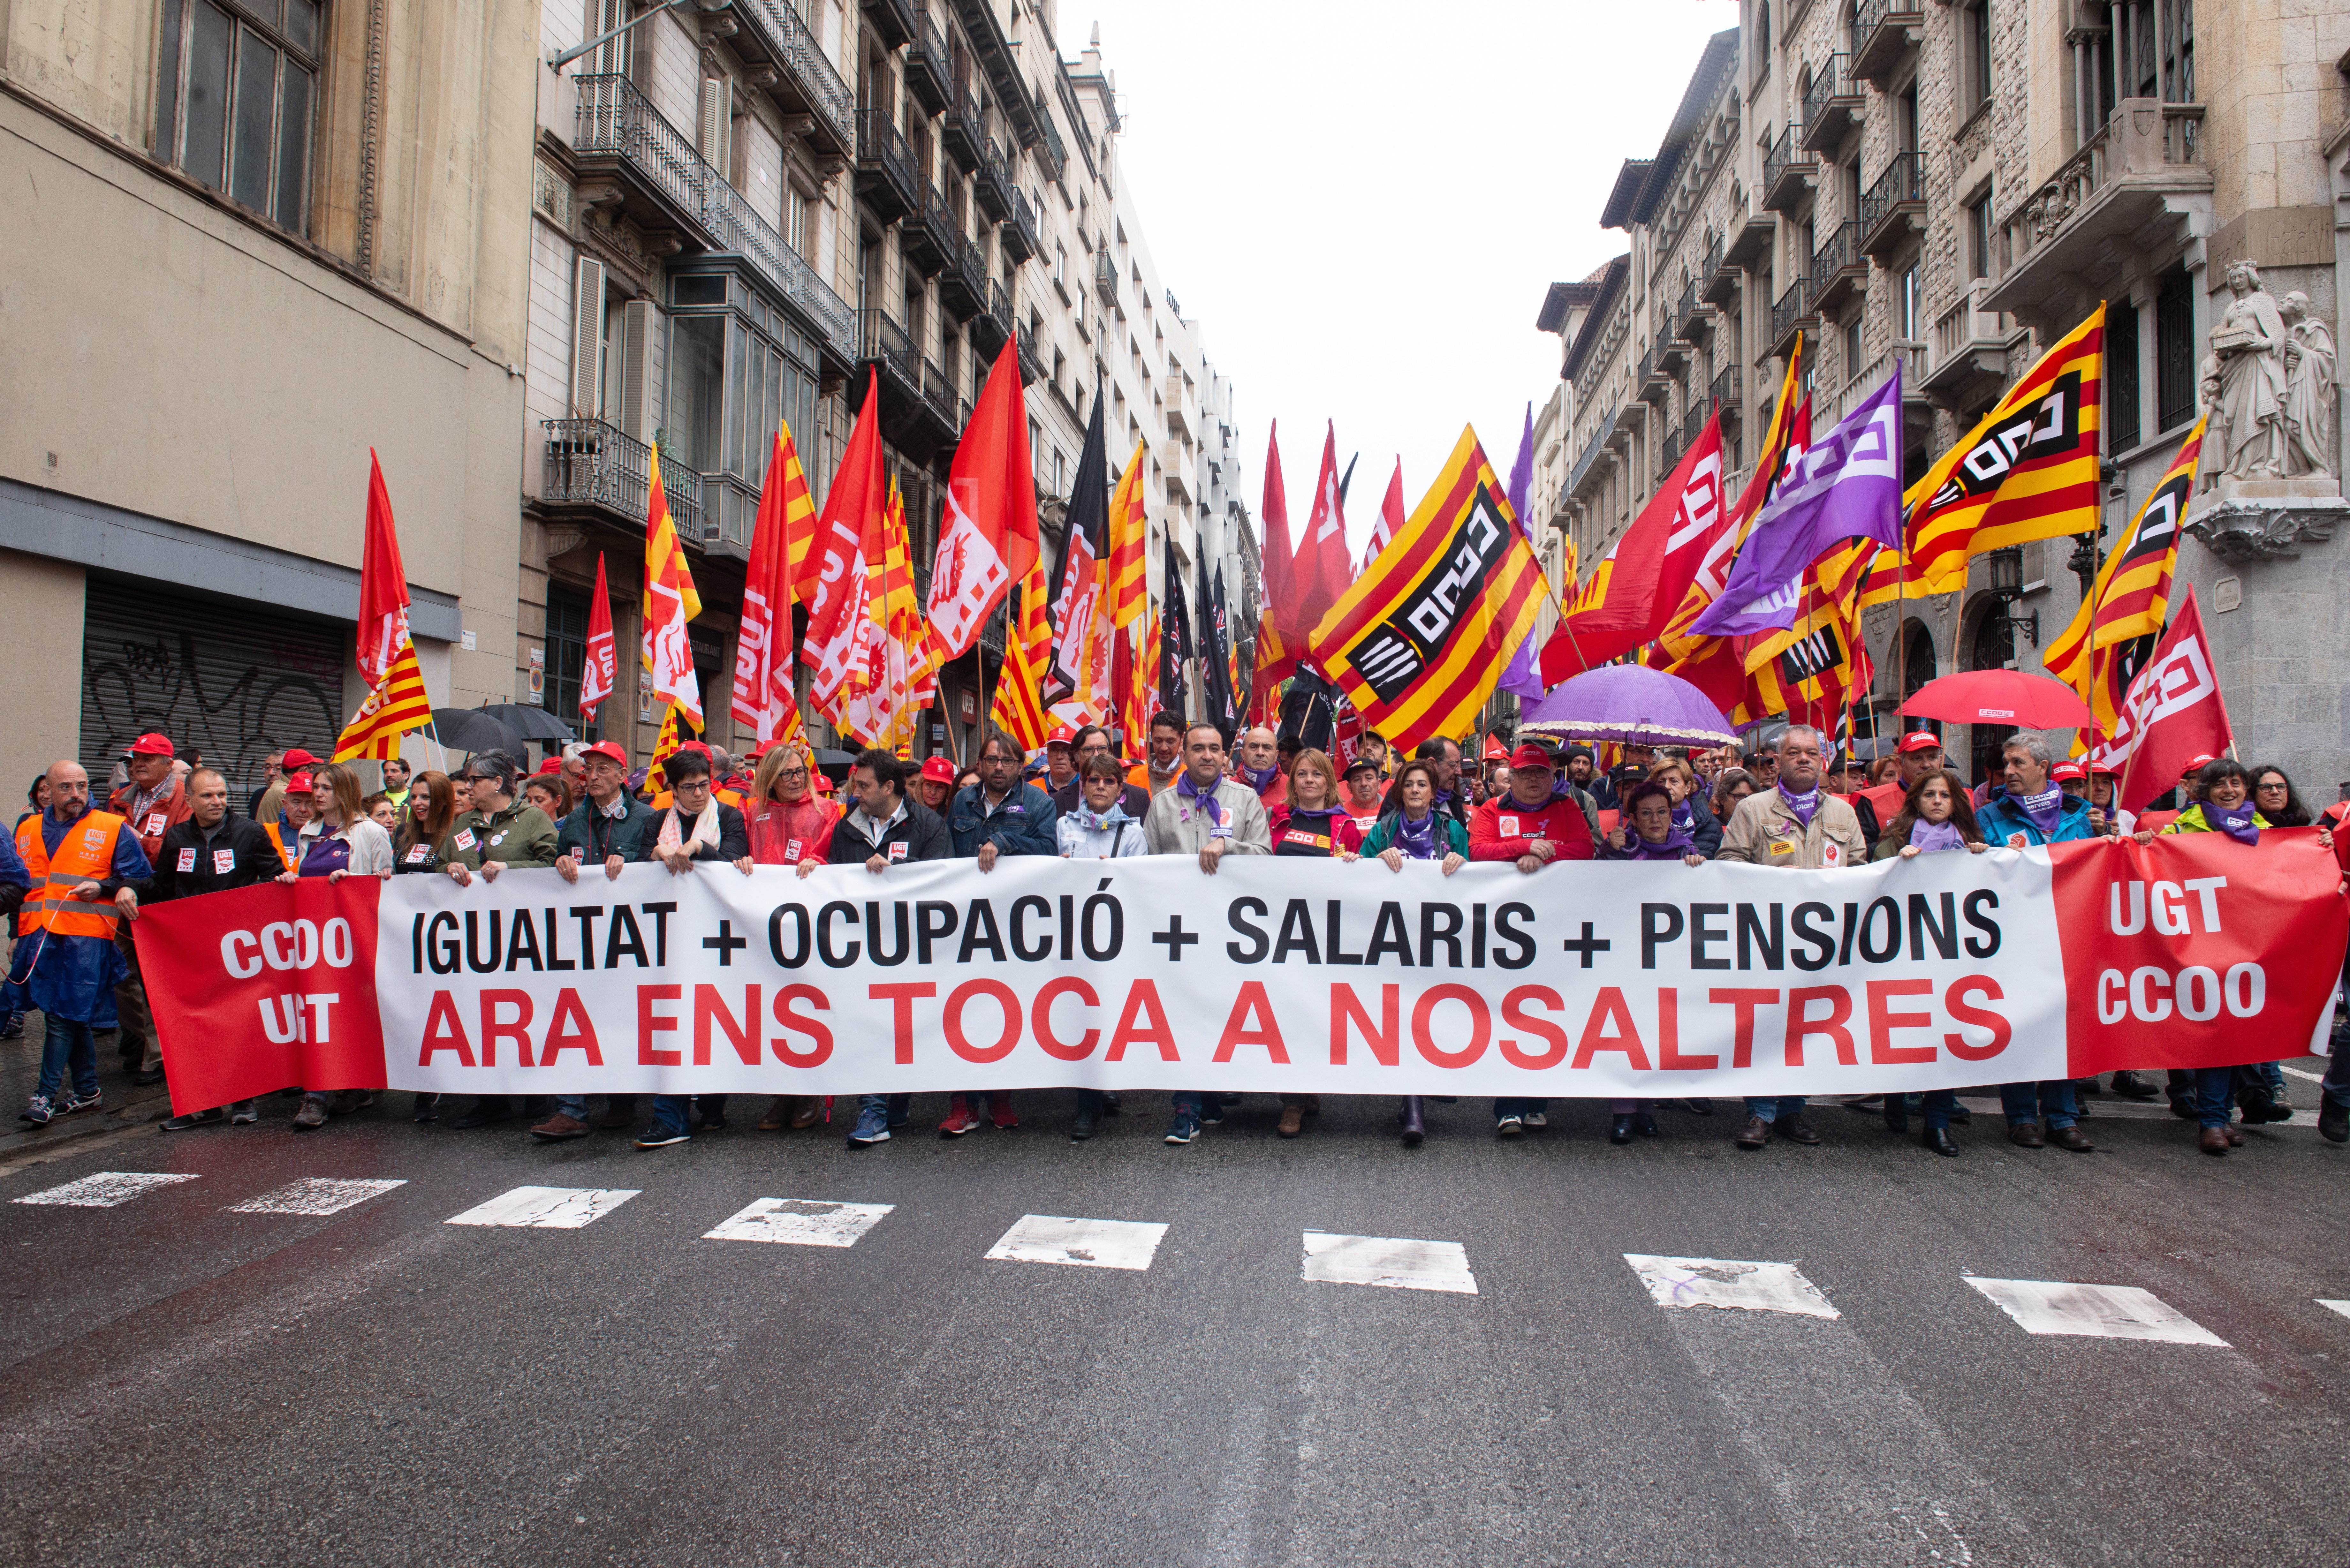 Los sindicatos llaman a "llenar las calles" reivindicando "más derechos y democracia"